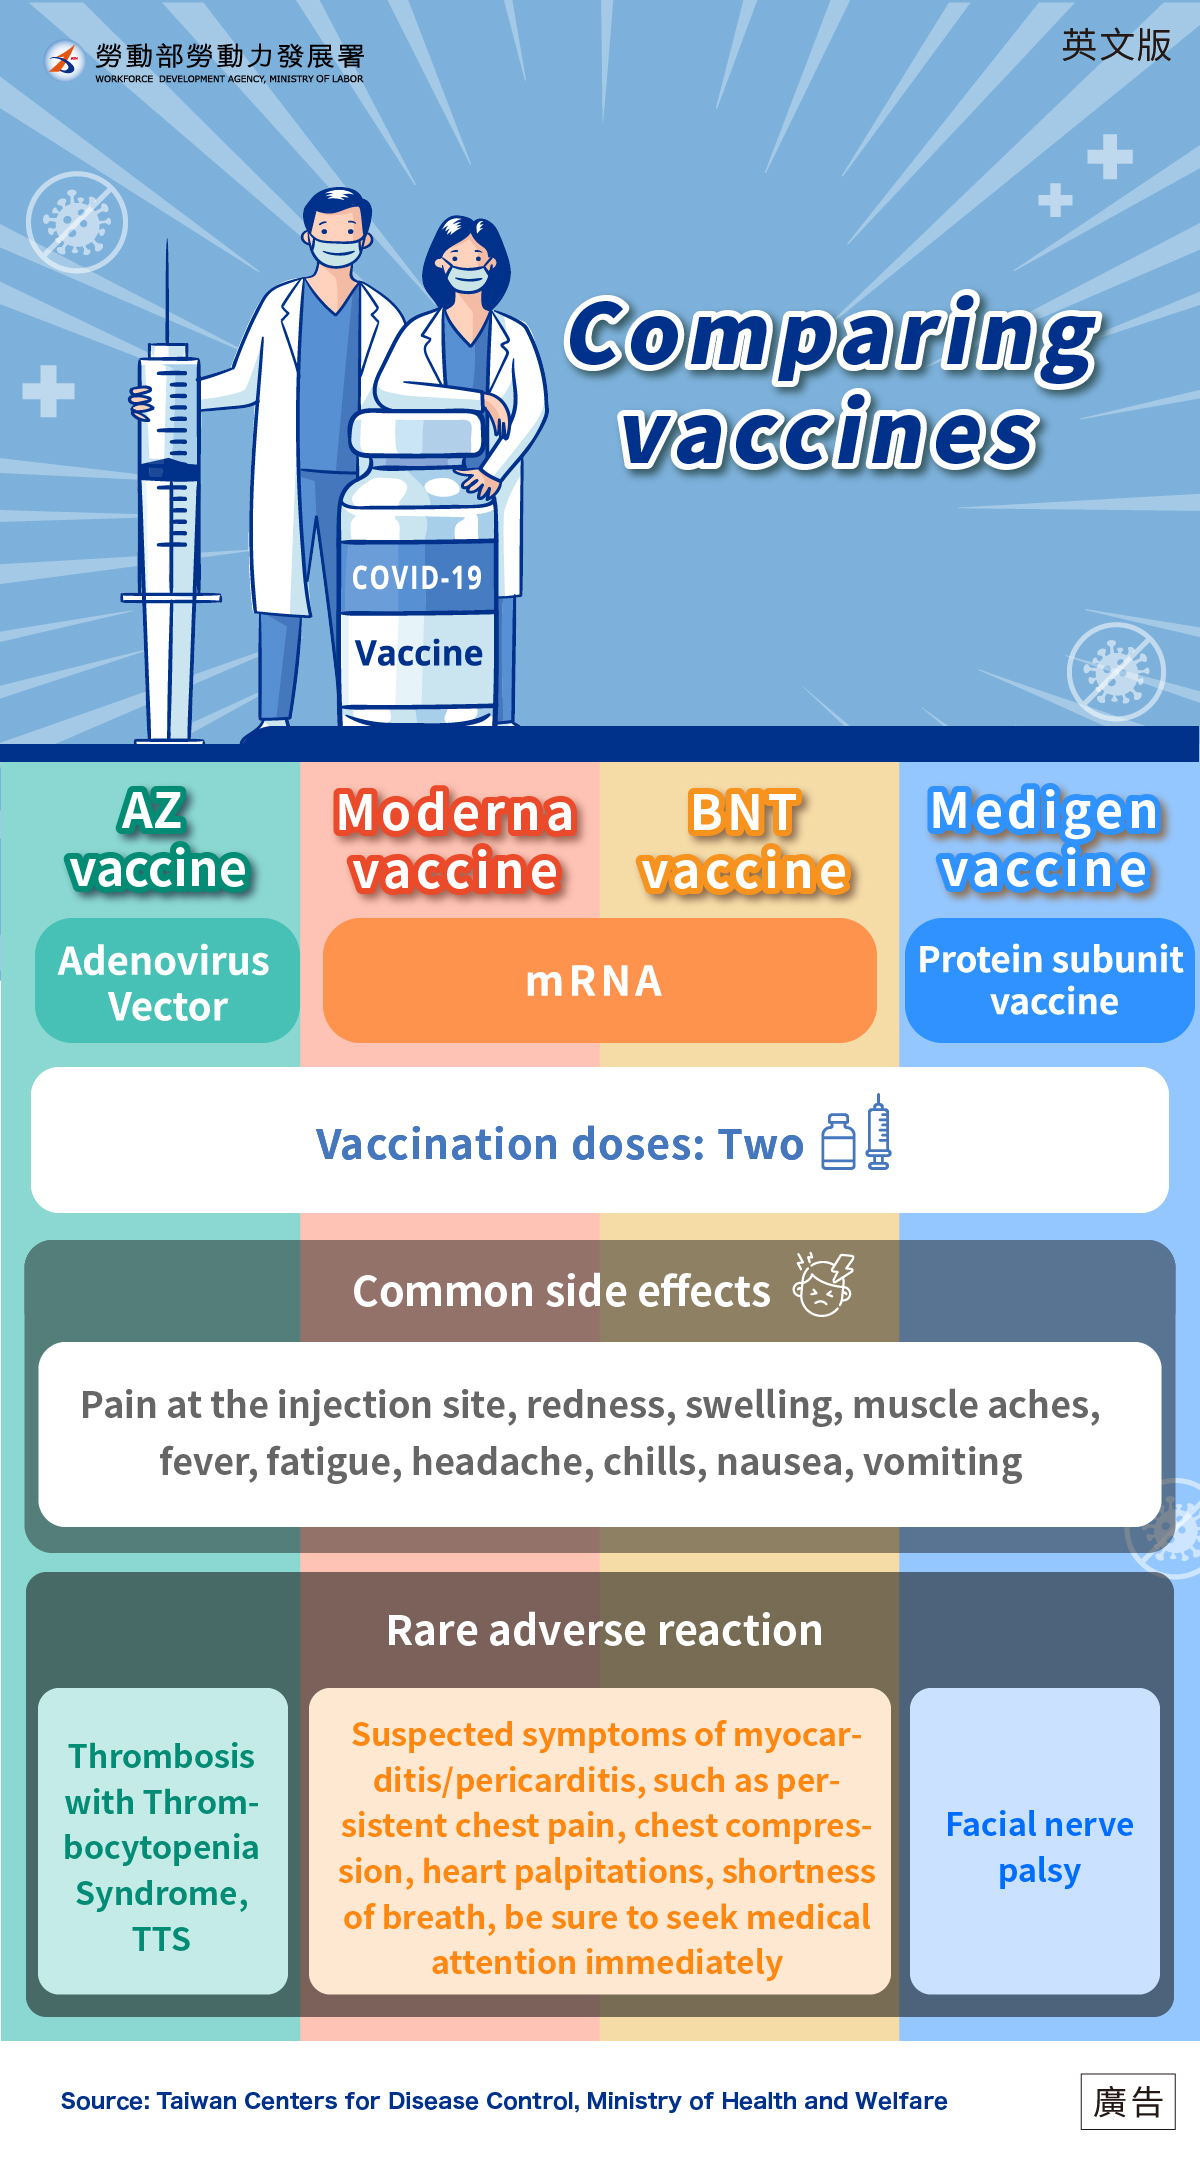 疫苗比較v5_0916_英.jpeg